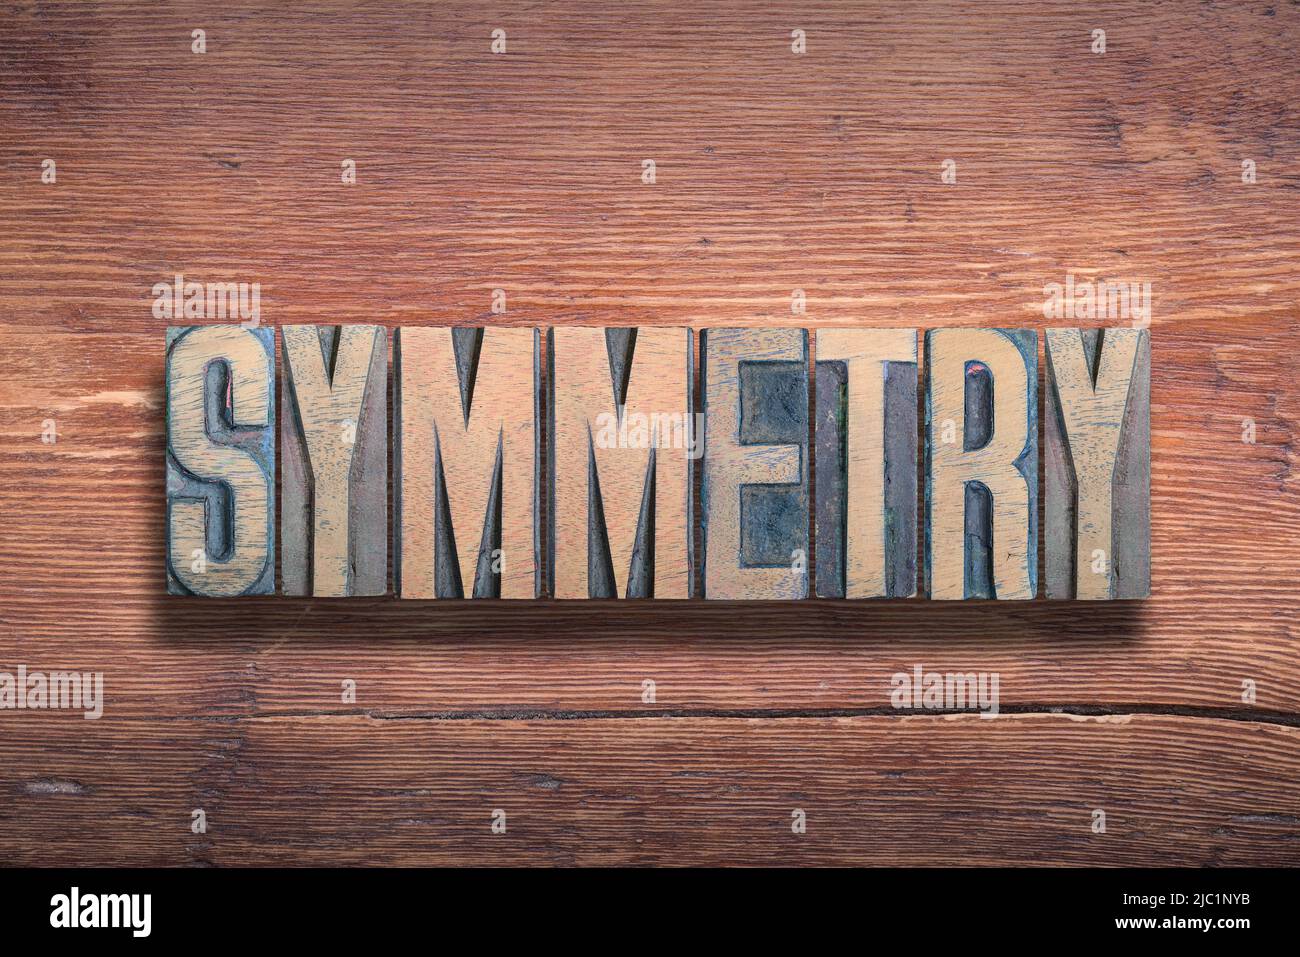 Symmetriewort aus Vintage-Buchdruck auf lackierter Holzoberfläche kombiniert Stockfoto